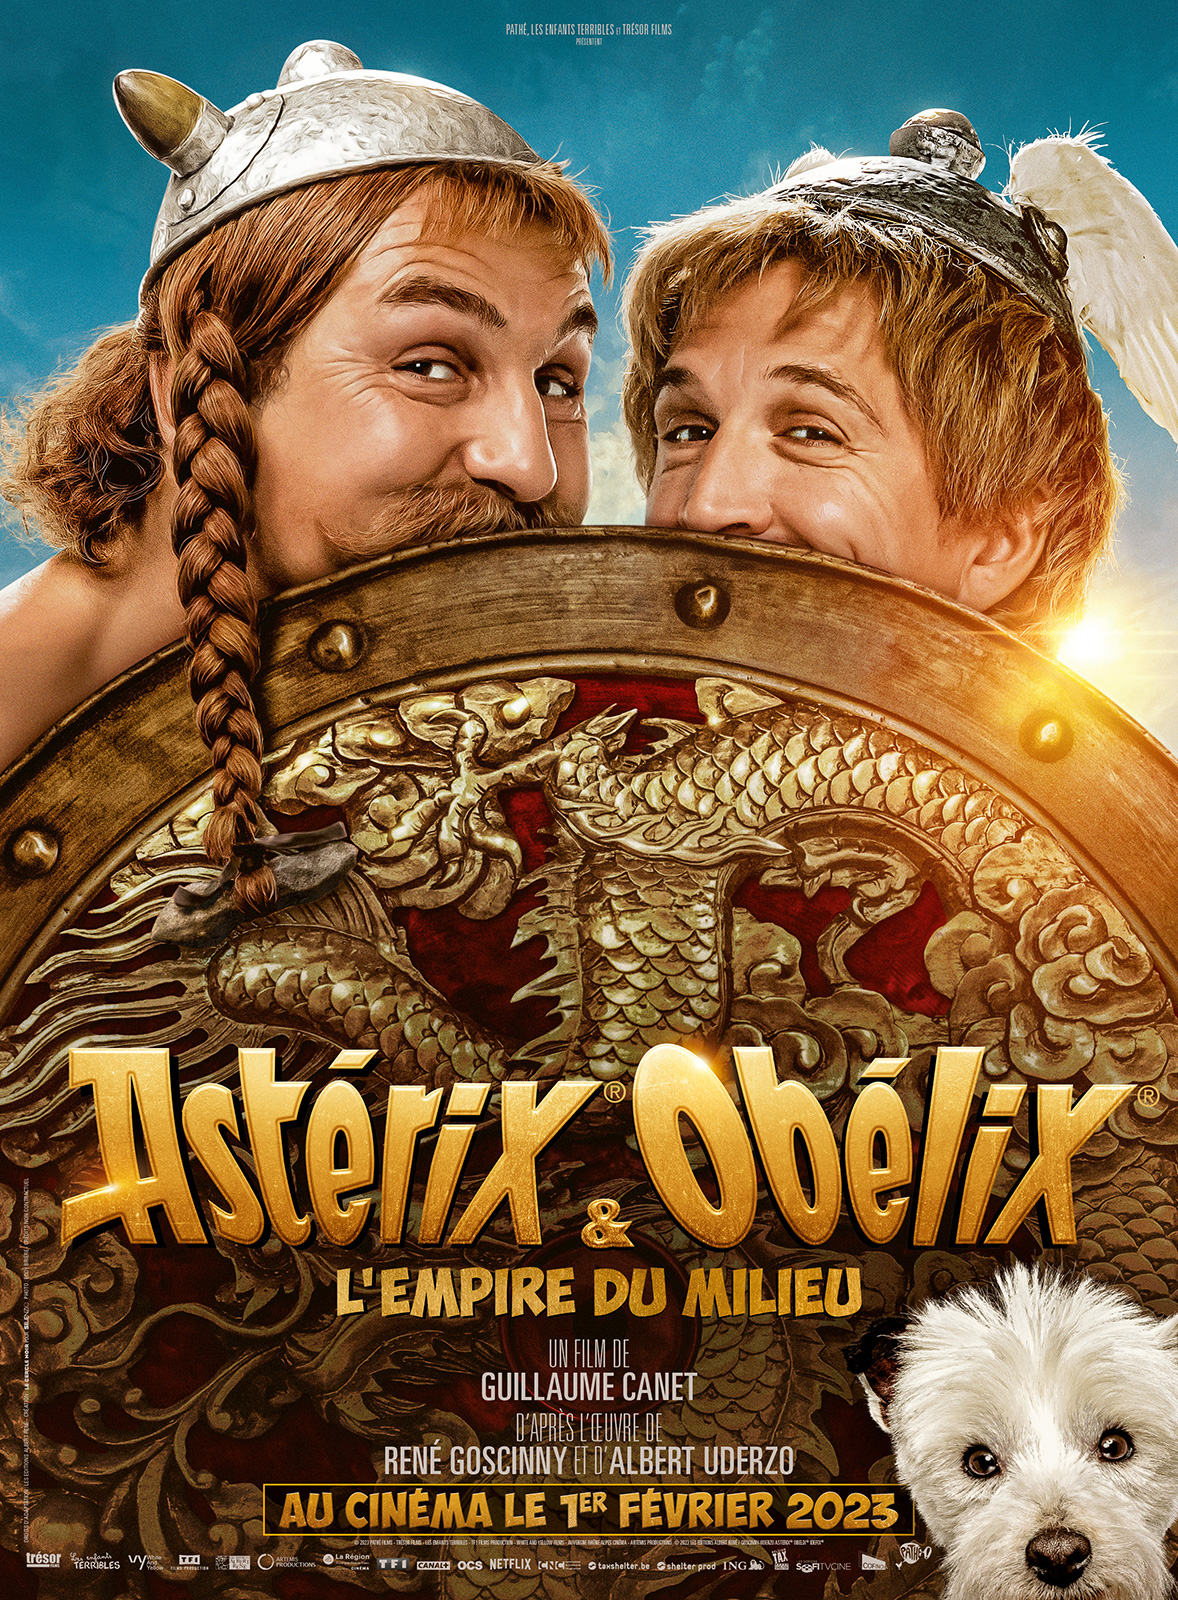 Première cinéma : Asterix et l'empire du milieu